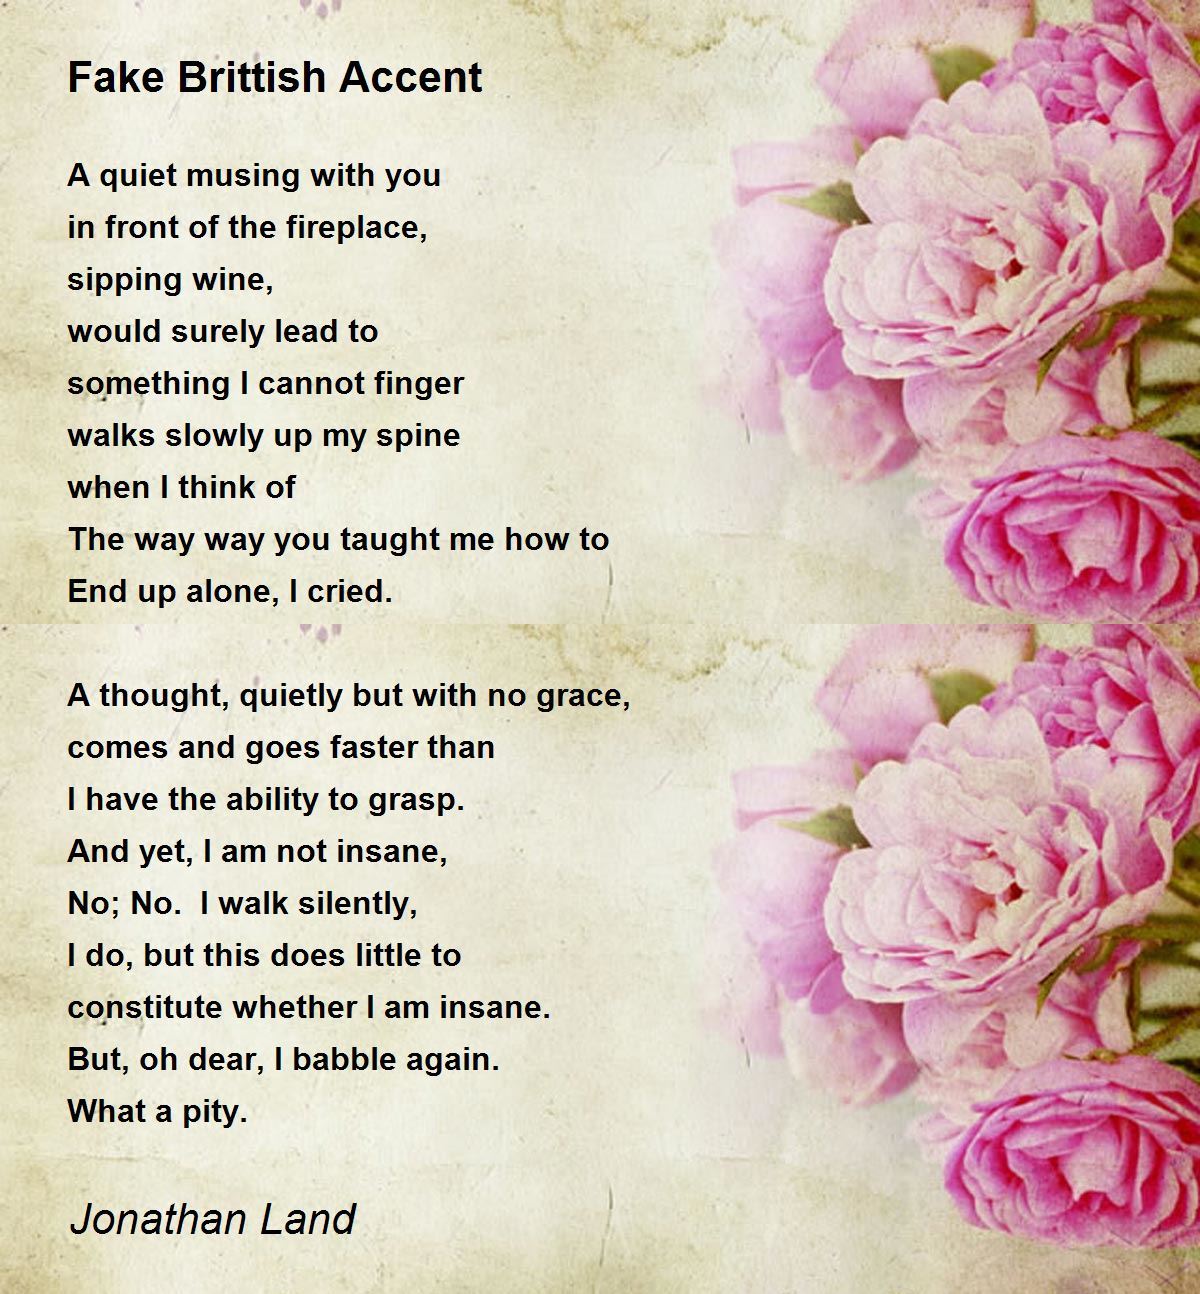 Fake Brittish Accent - Fake Brittish Accent Poem by Jonathan Land